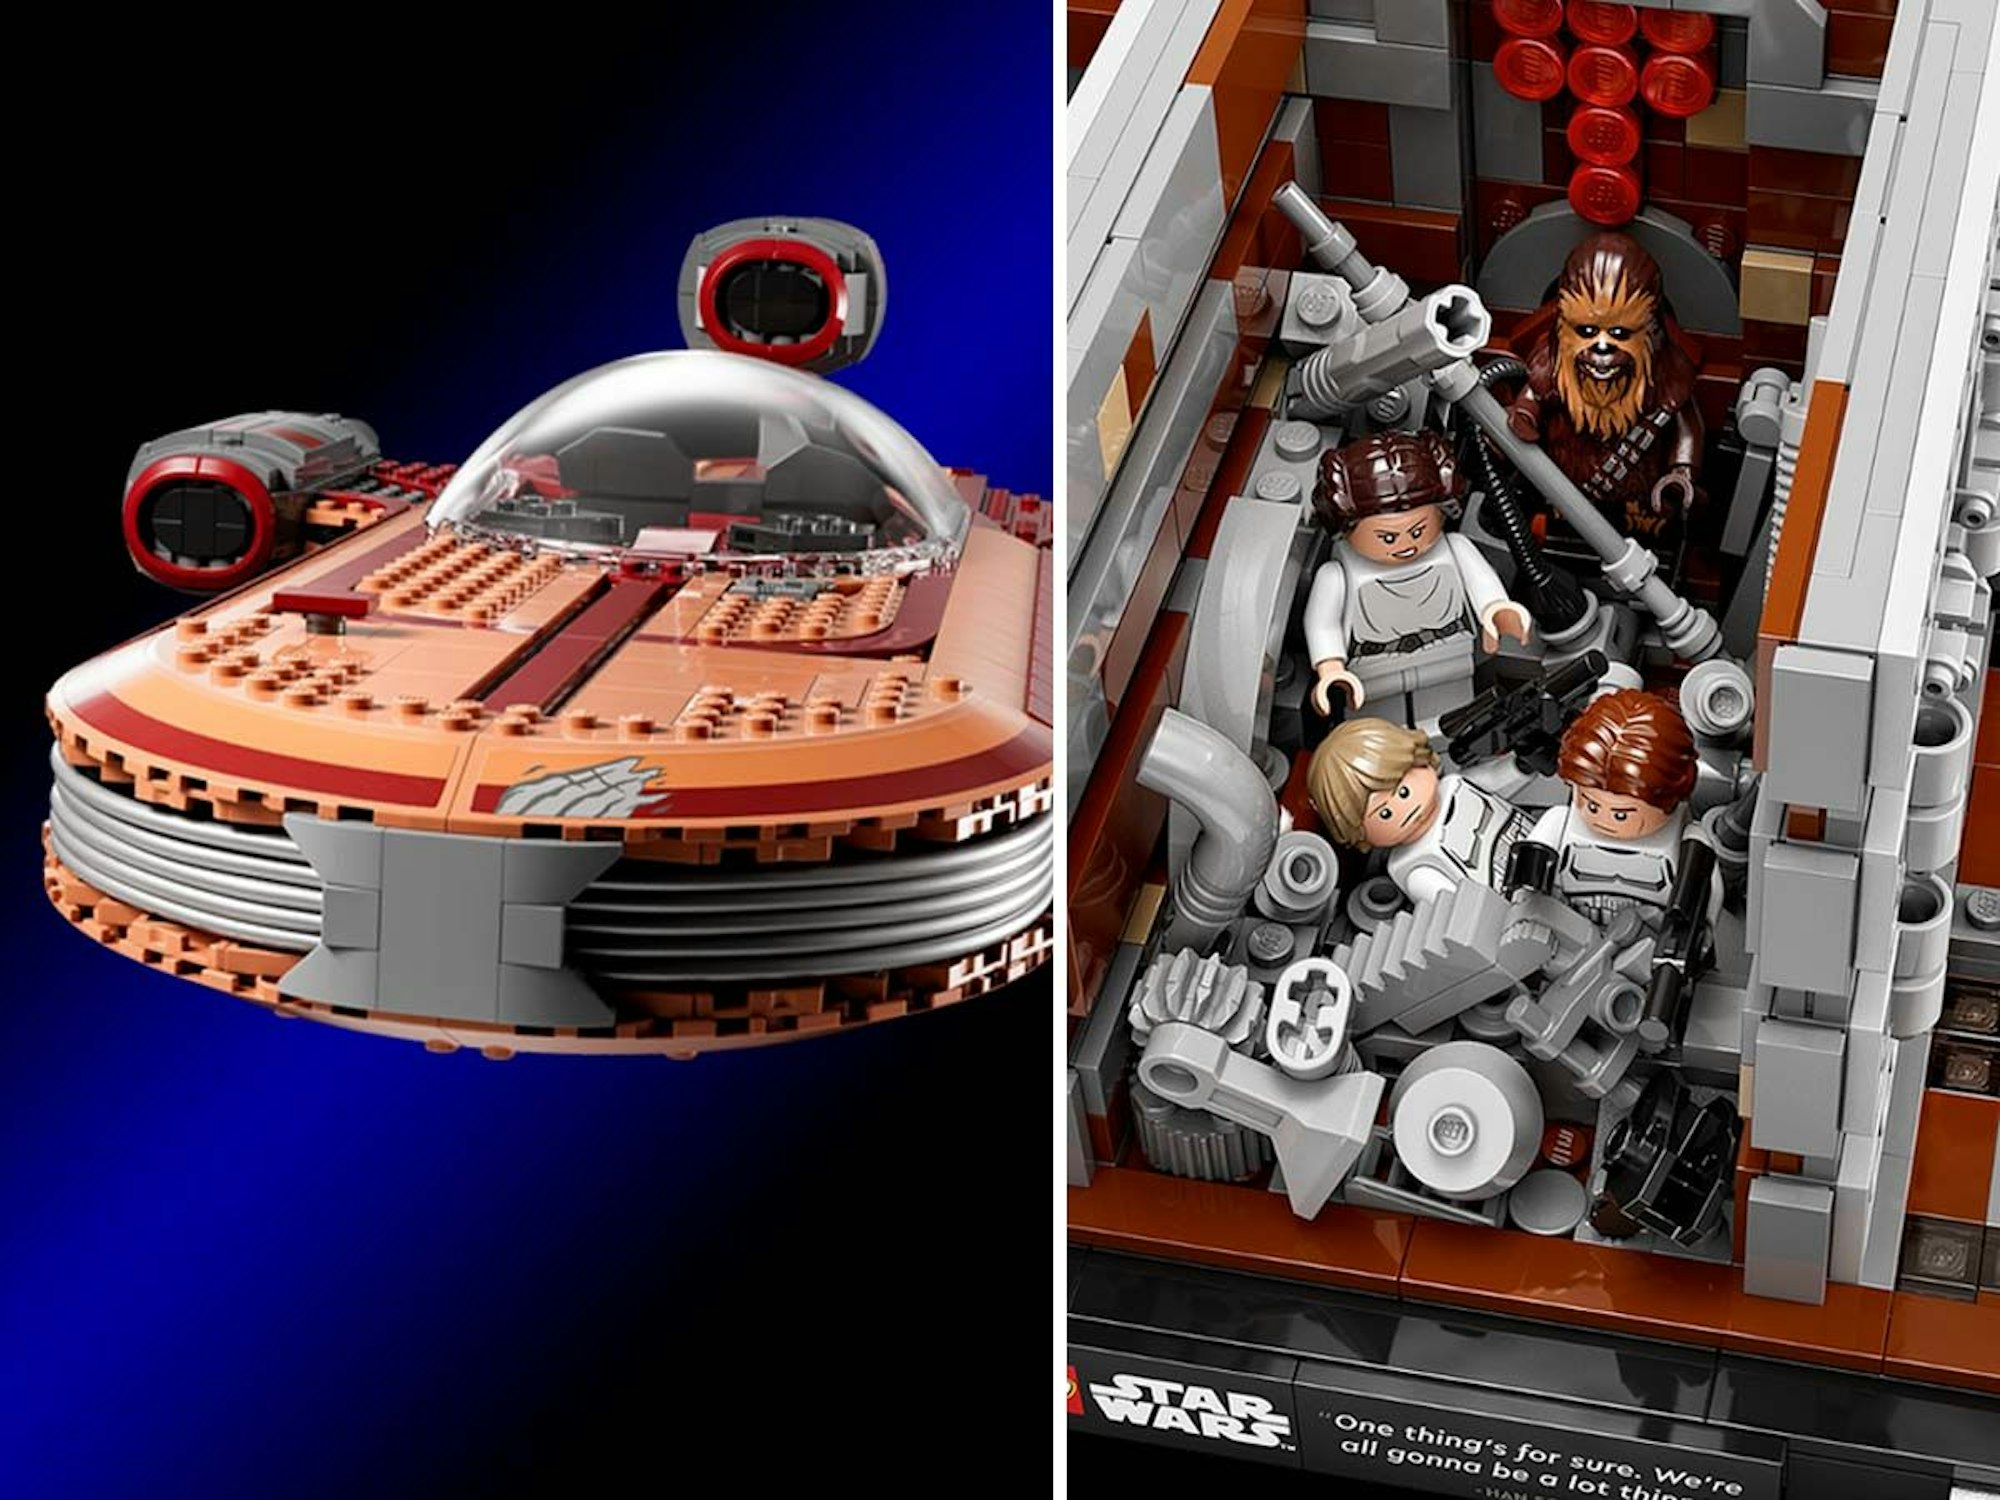 Lego Star Wars Luke Skywalkers Landspeeder UCS und Star Wars Todesstern Müllpresse Diorama. Bild für Lego Neuheiten April und Mai 2022 Artikel.